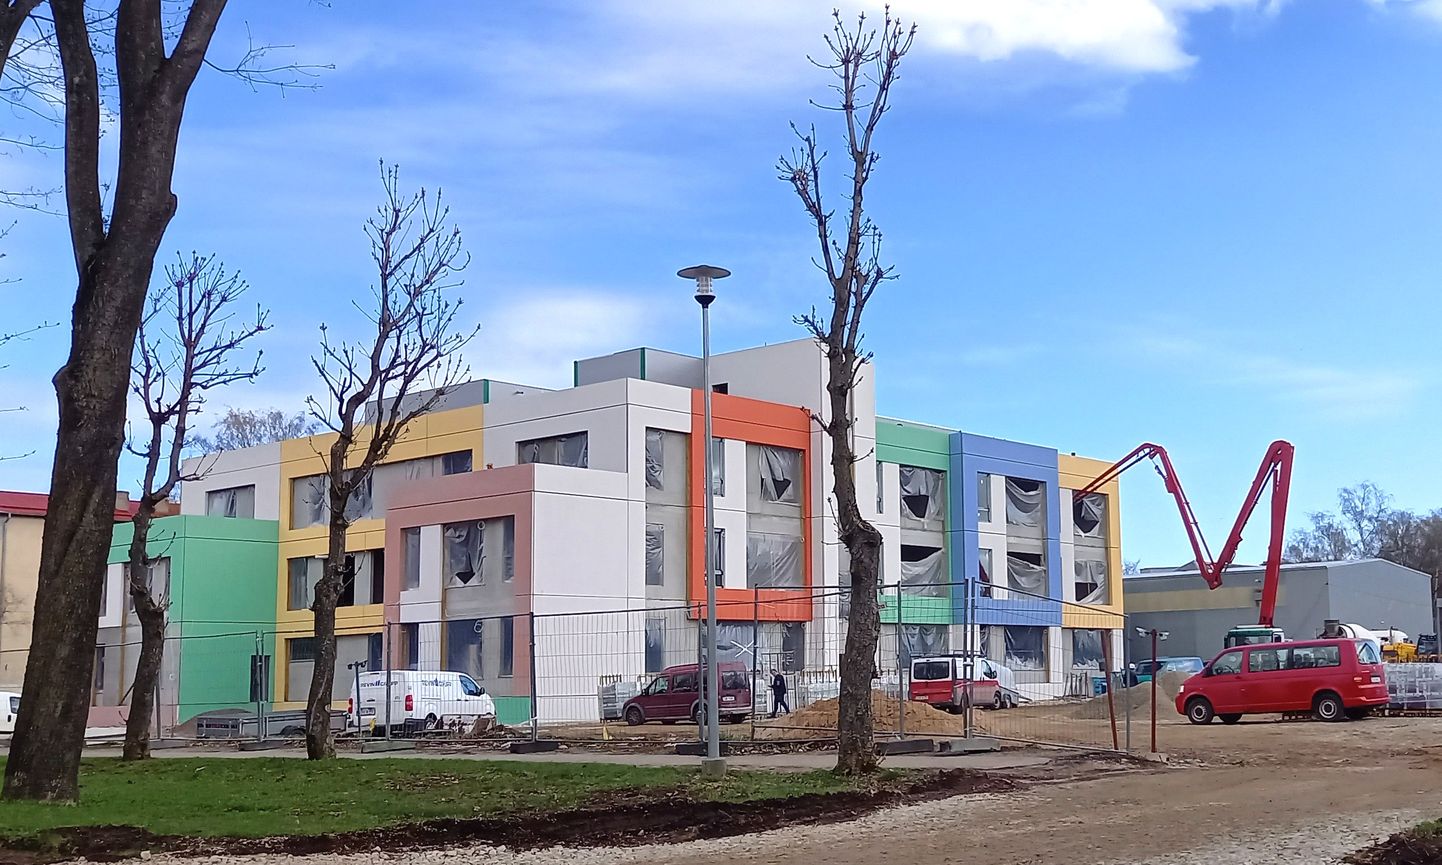 Напоминающее кубик Рубика здание Кесклиннаской основной школы с разноцветным фасадом строится, однако пока неясно, когда оно будет готово и во сколько обойдется кохтла-ярвеским налогоплательщикам.